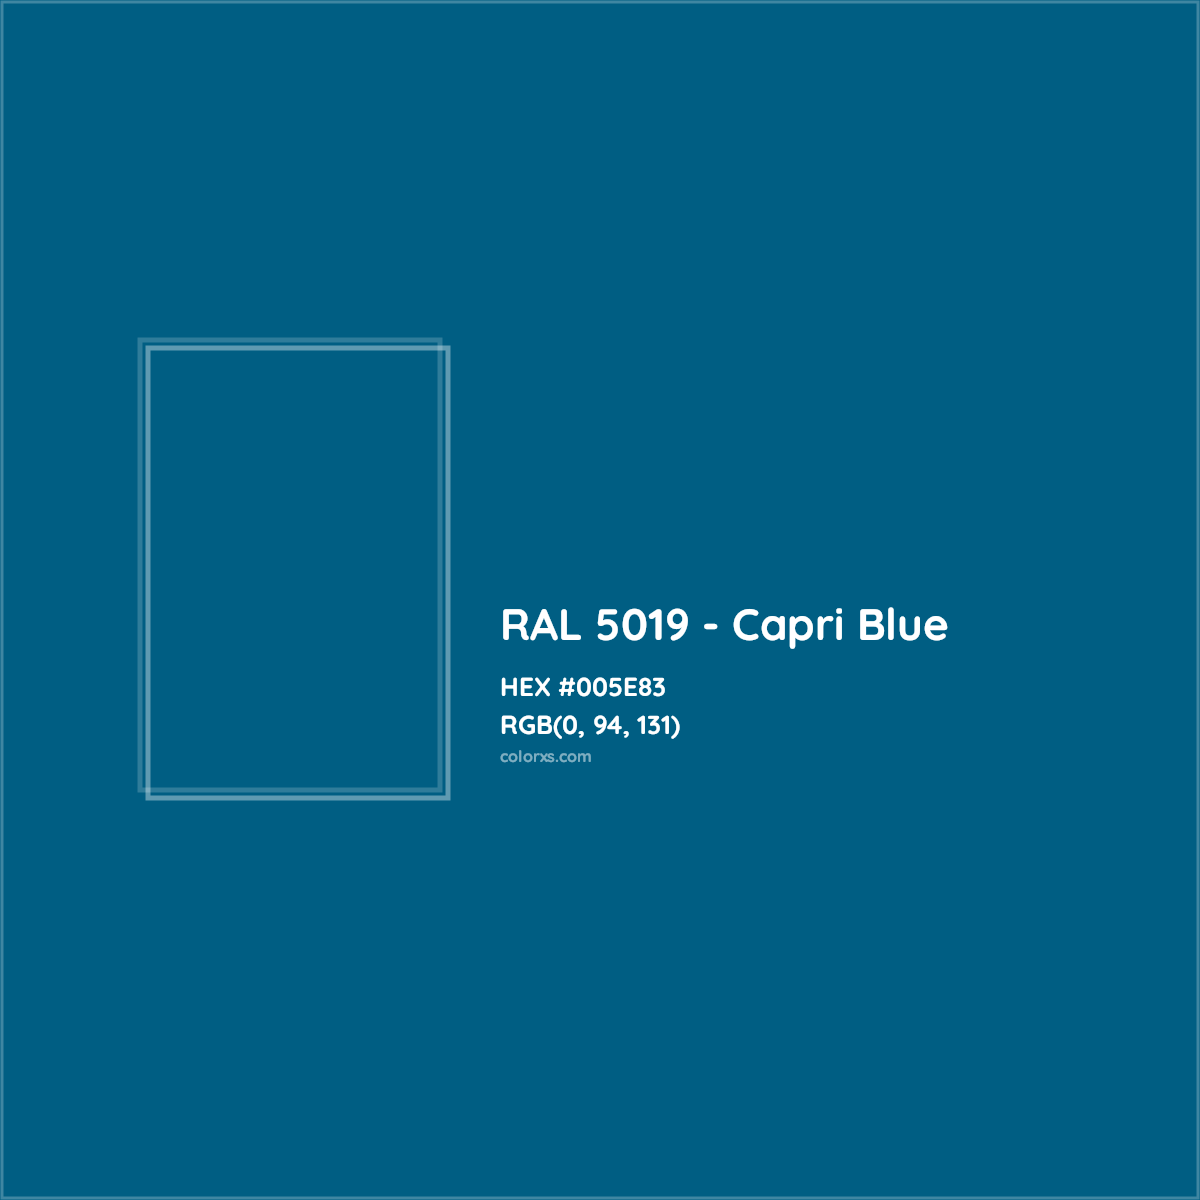 About RAL 5019 - Capri Blue Color - Color codes, similar colors